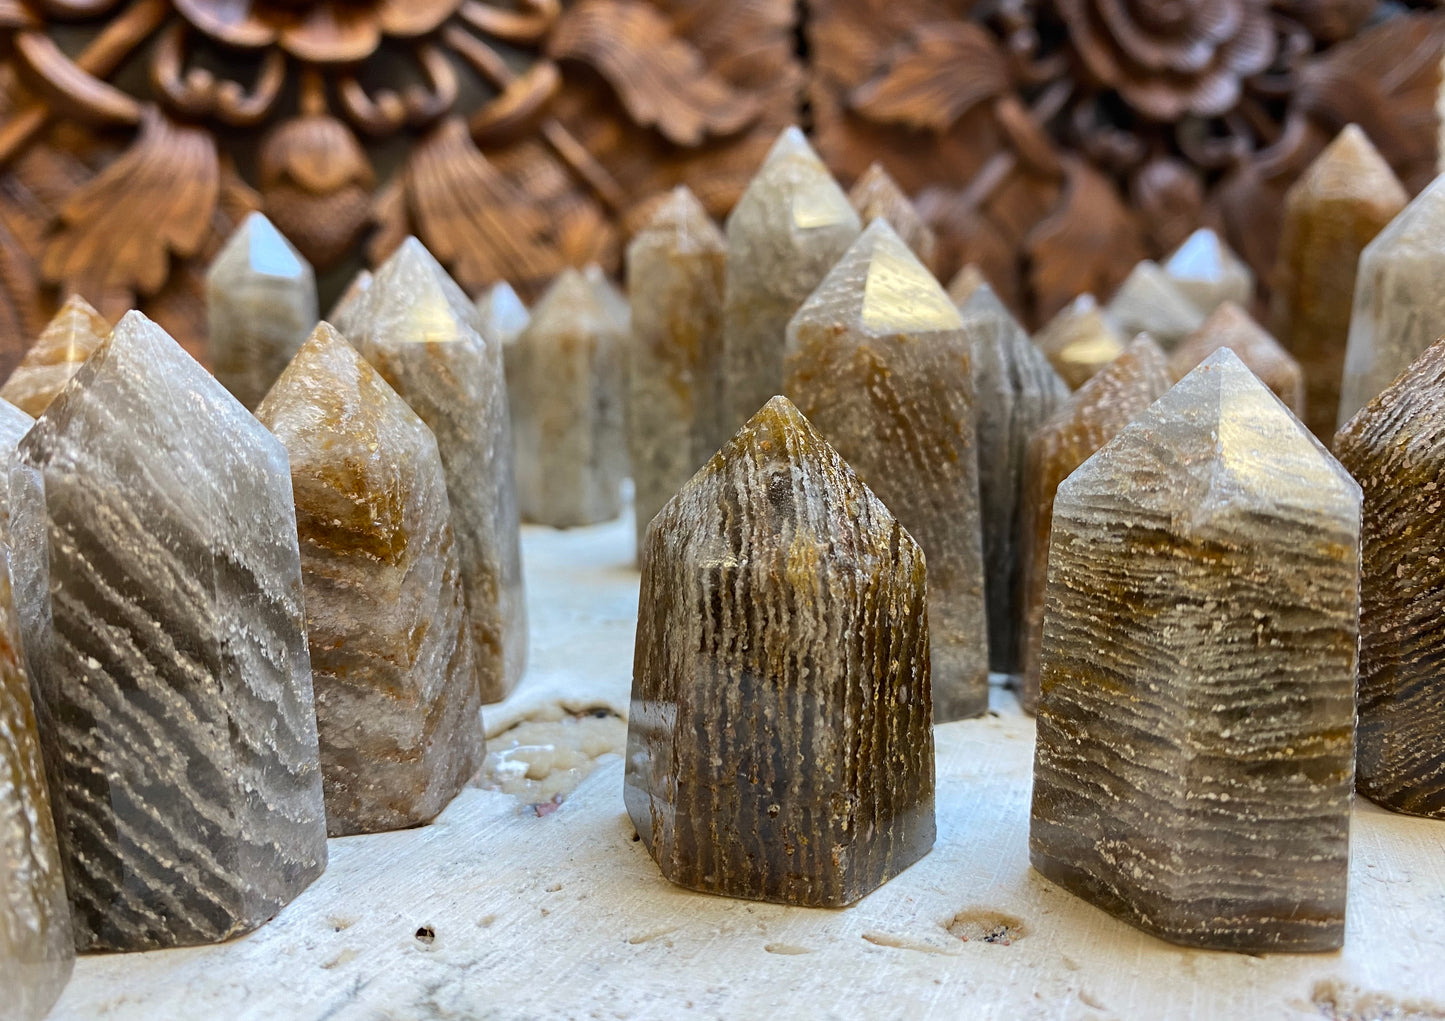 Shamans Quartz Base Cut Quartz Crystal points with Volcanic Ash Inclusions